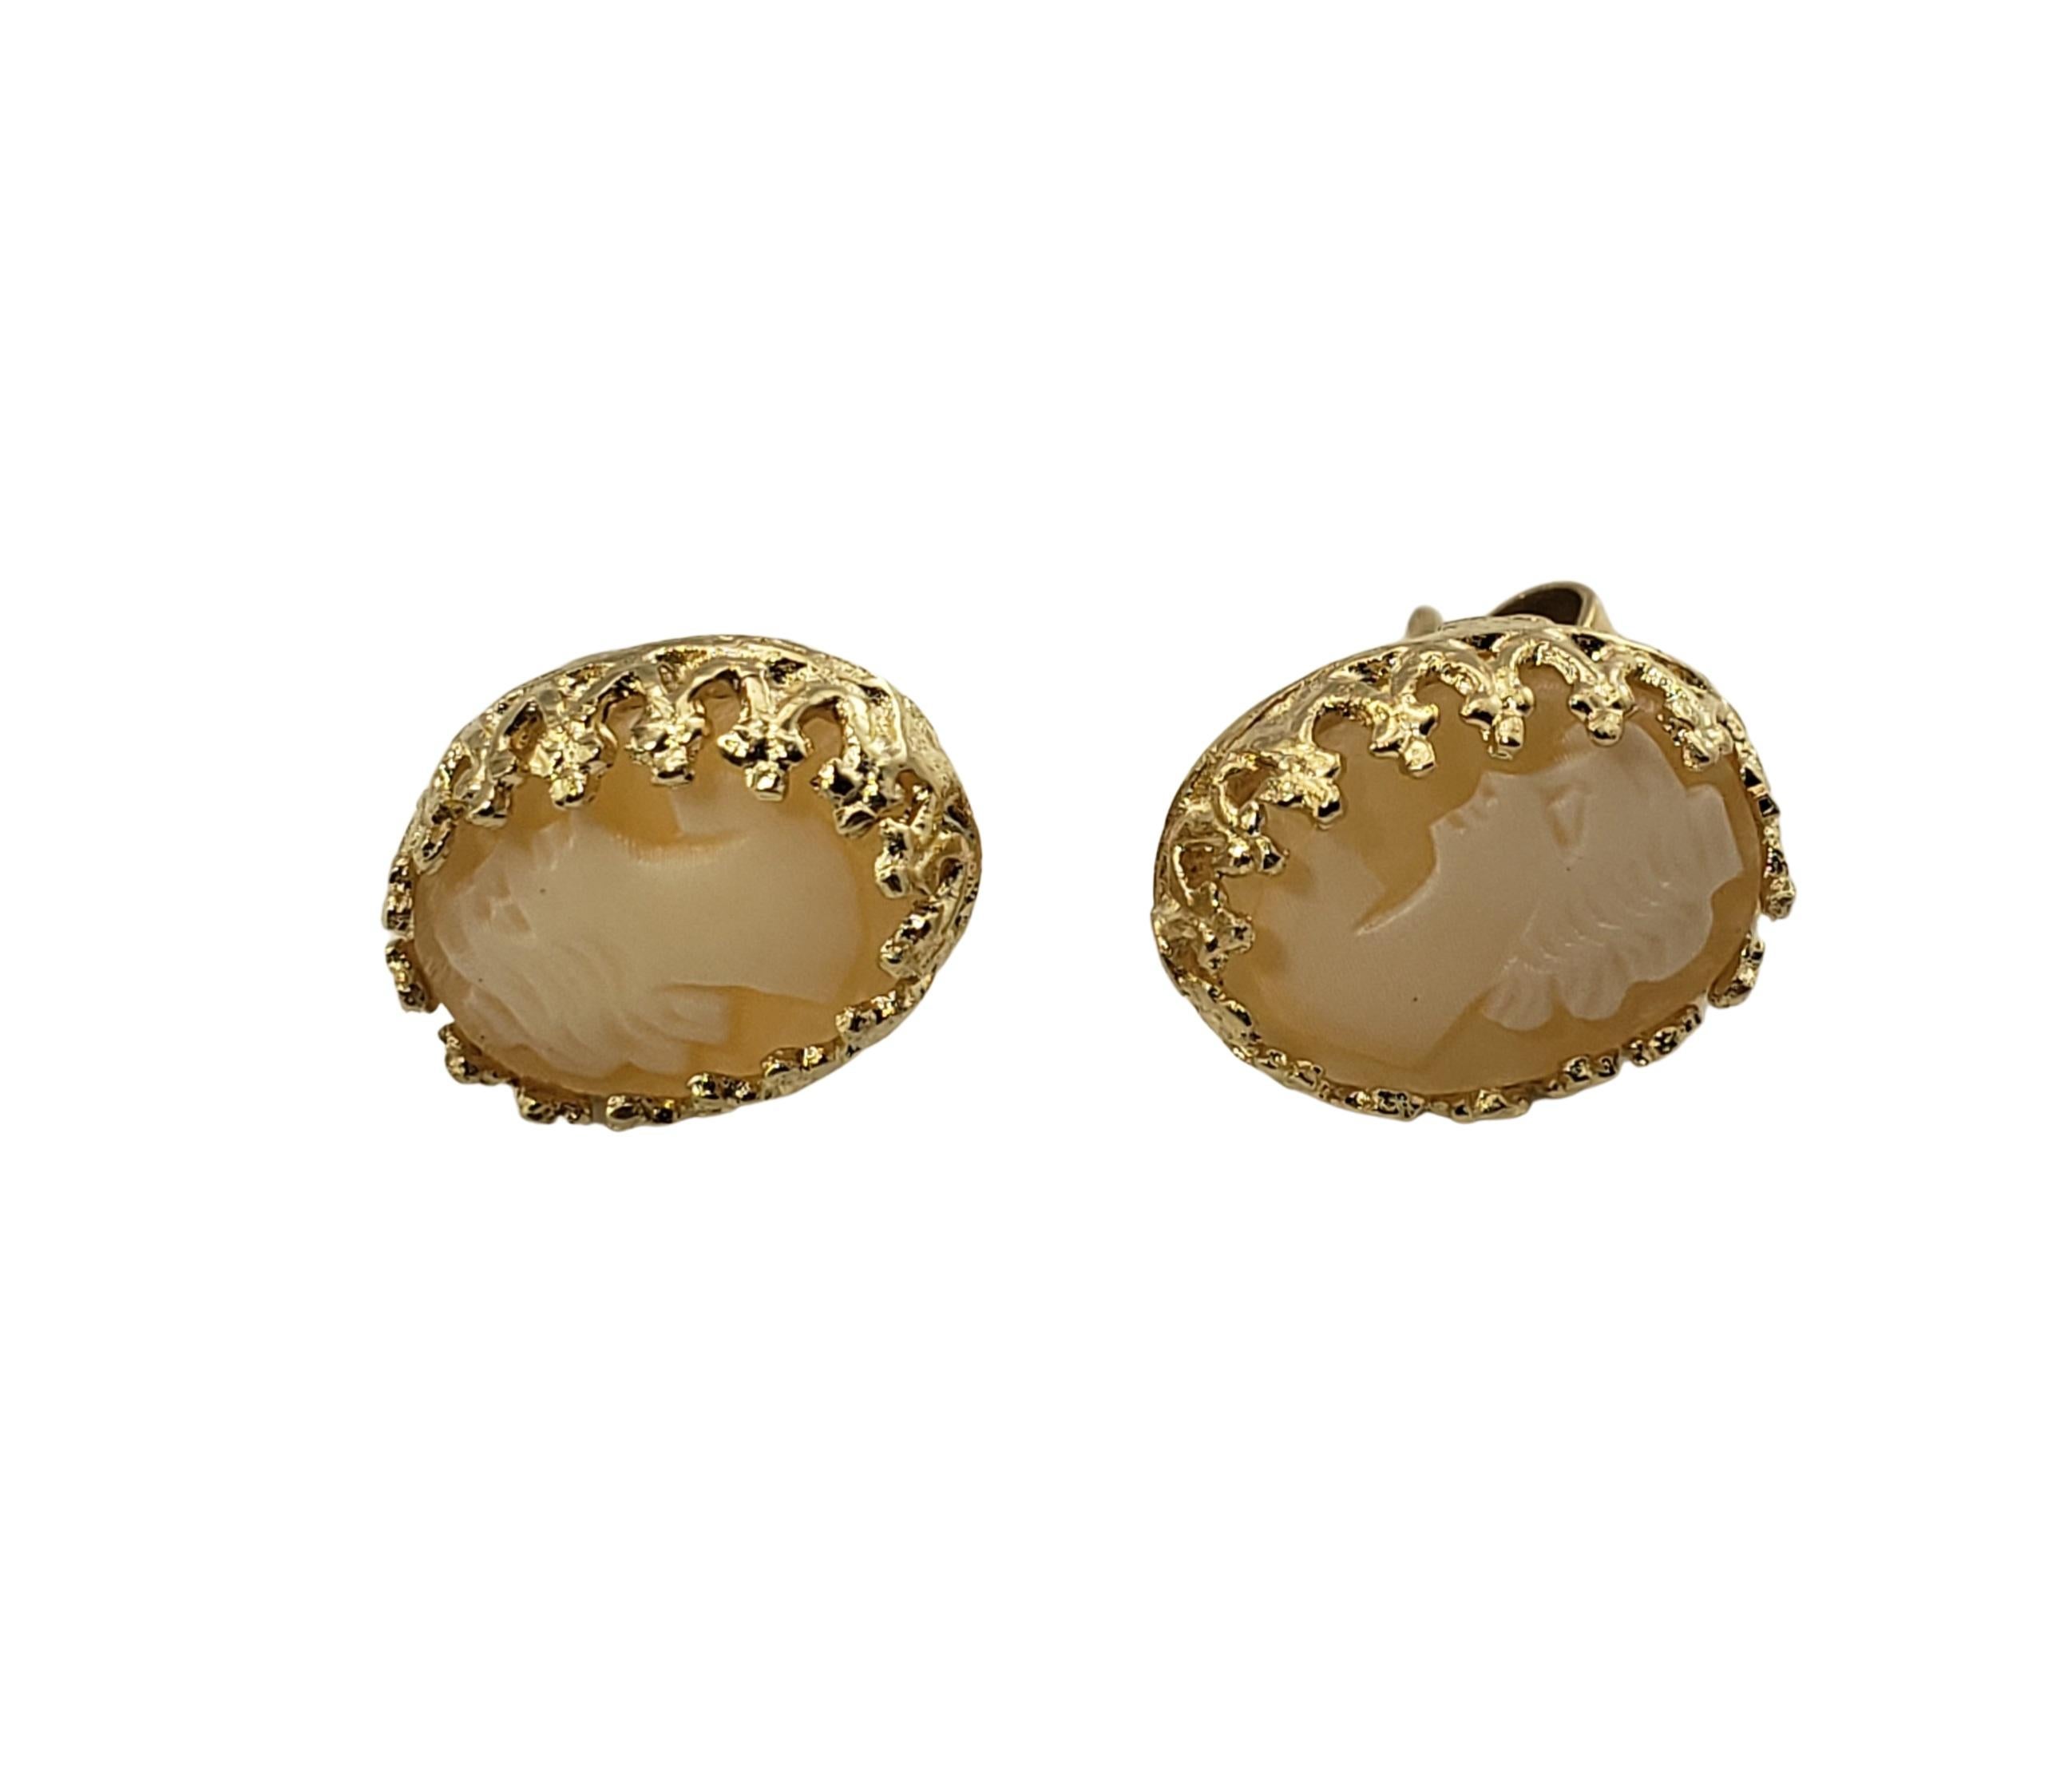 14 Karat Gelbgold Kamee-Ohrringe-

Diese eleganten Cameo-Ohrringe zeigen jeweils eine hübsche Dame im Profil, eingefasst in wunderschön detailliertes 14K Gelbgold.

Größe: 11 mm x 9 mm

Gewicht:  1.8 dwt. /  2.9 gr.

Geprüft auf 14K Gold.

Sehr